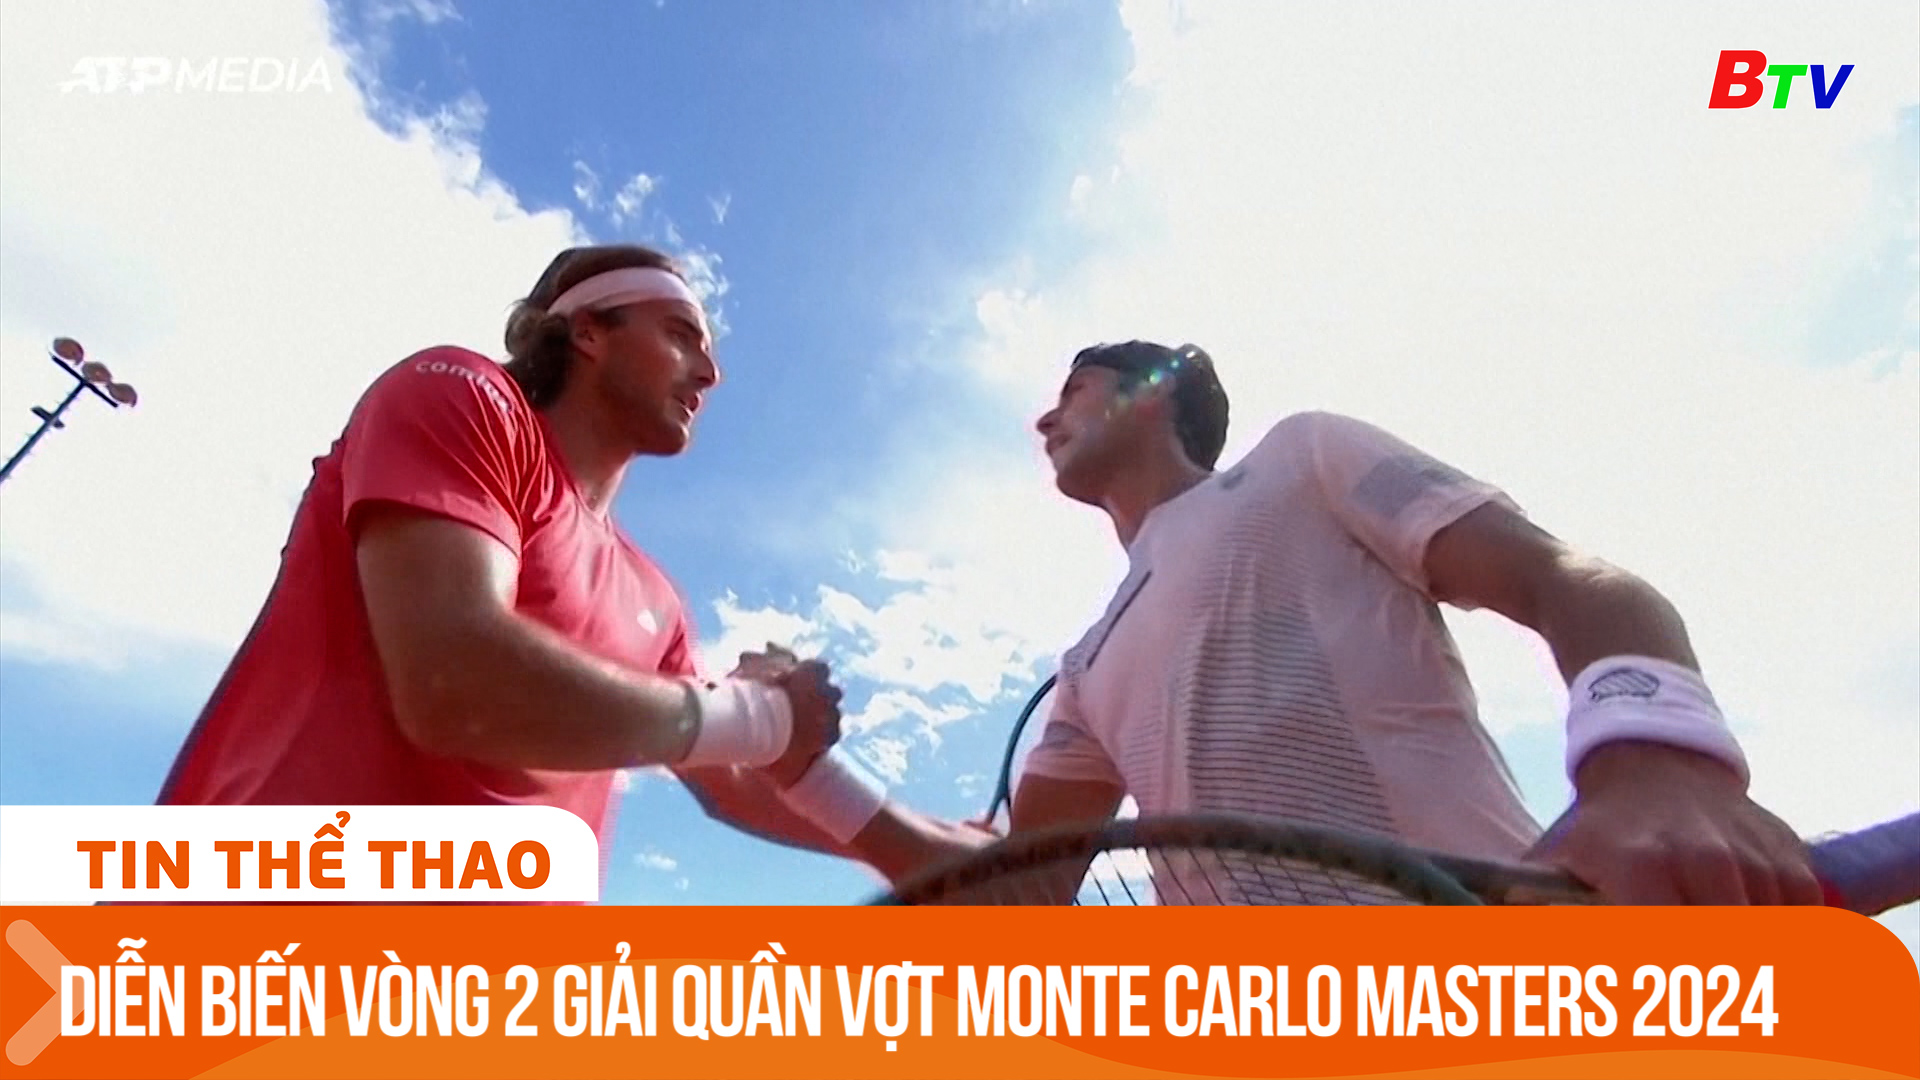 Diễn biến vòng 2 giải quần vợt Monte Carlo Masters 2024 | Tin Thể thao 24h	